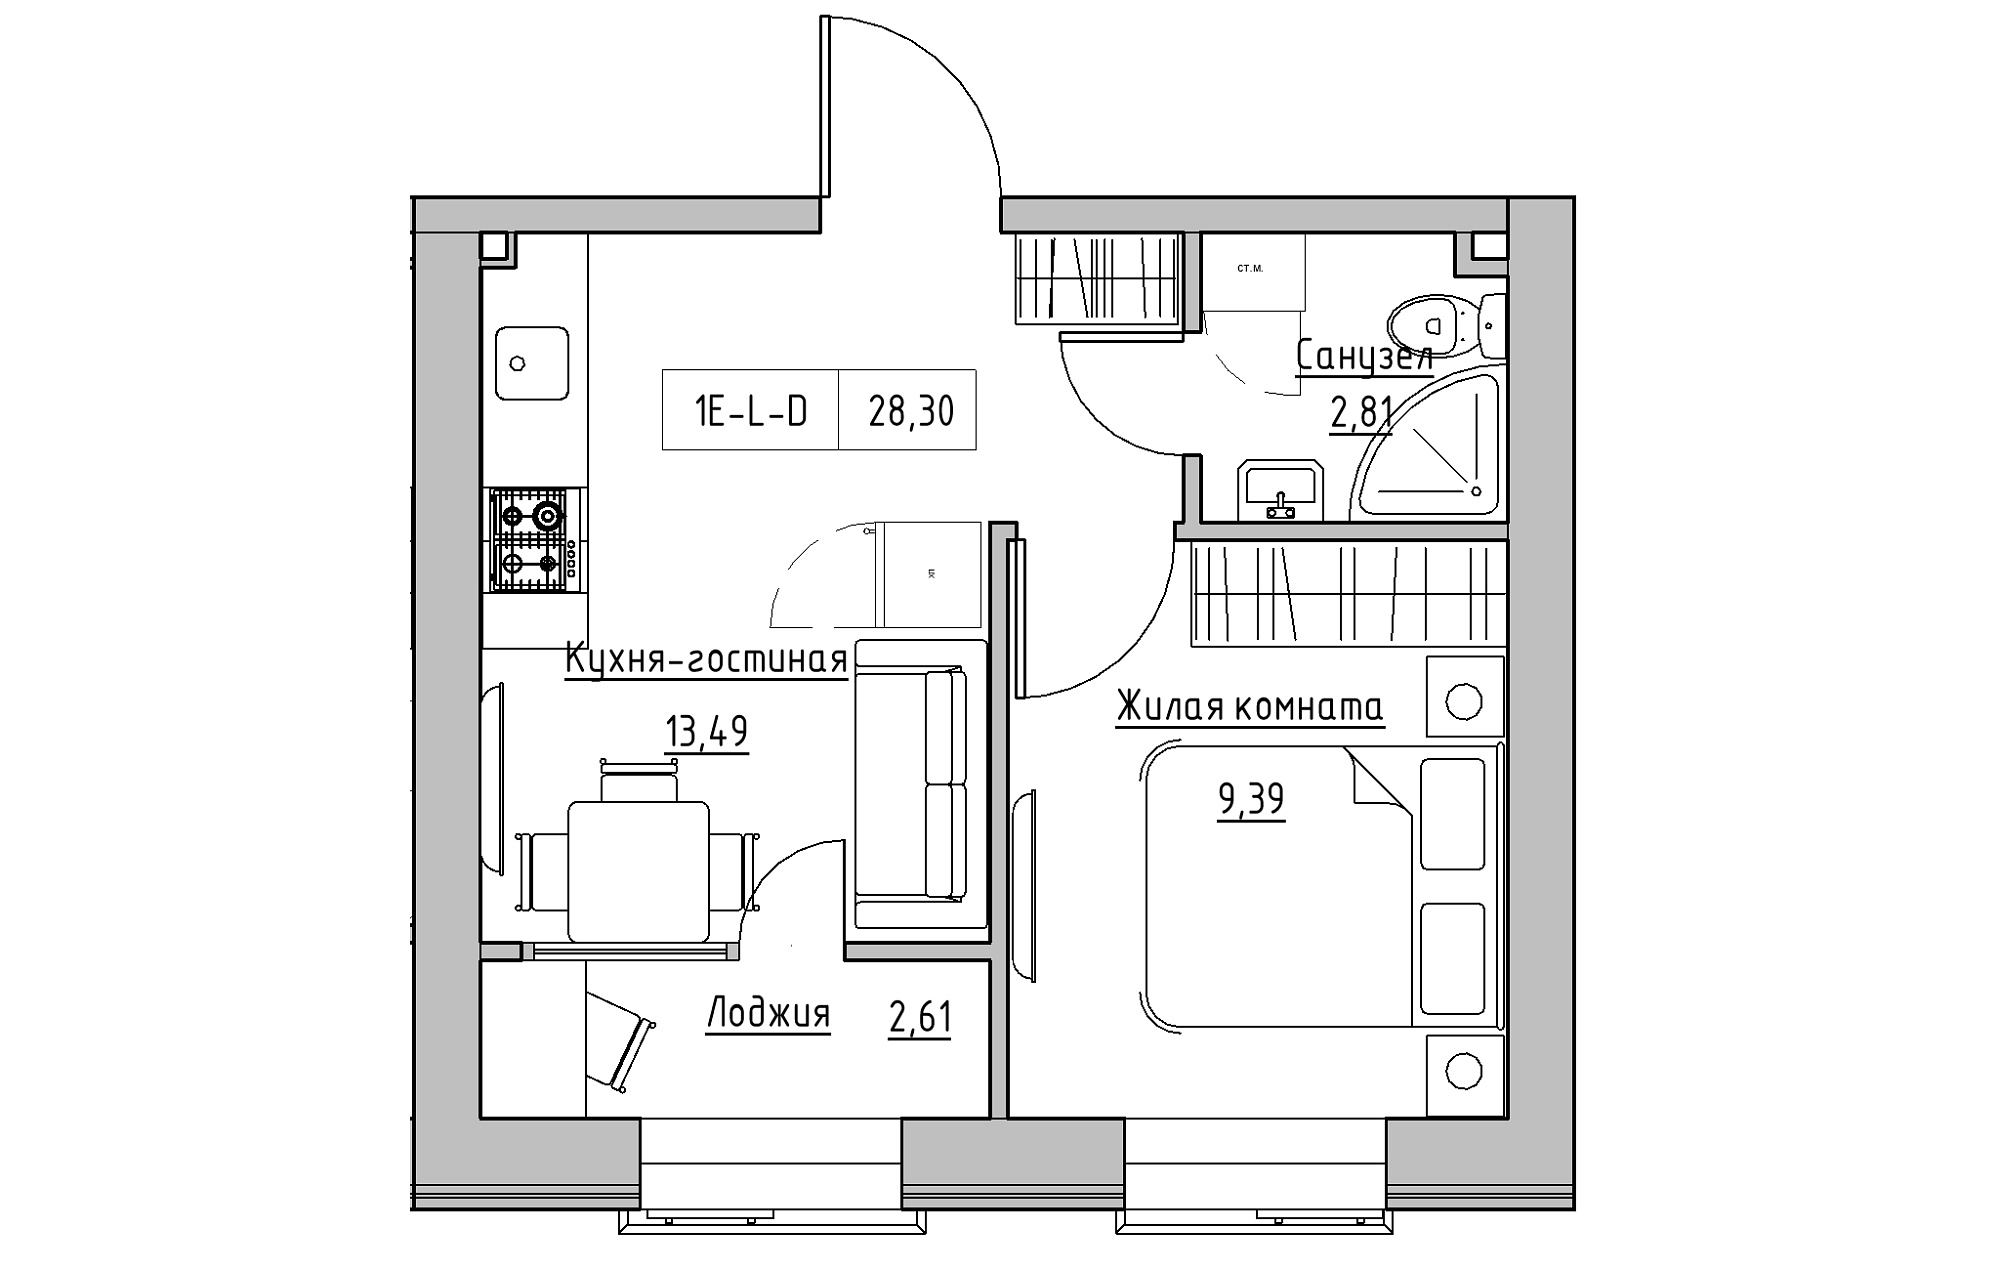 Планування 1-к квартира площею 28.3м2, KS-018-04/0001.